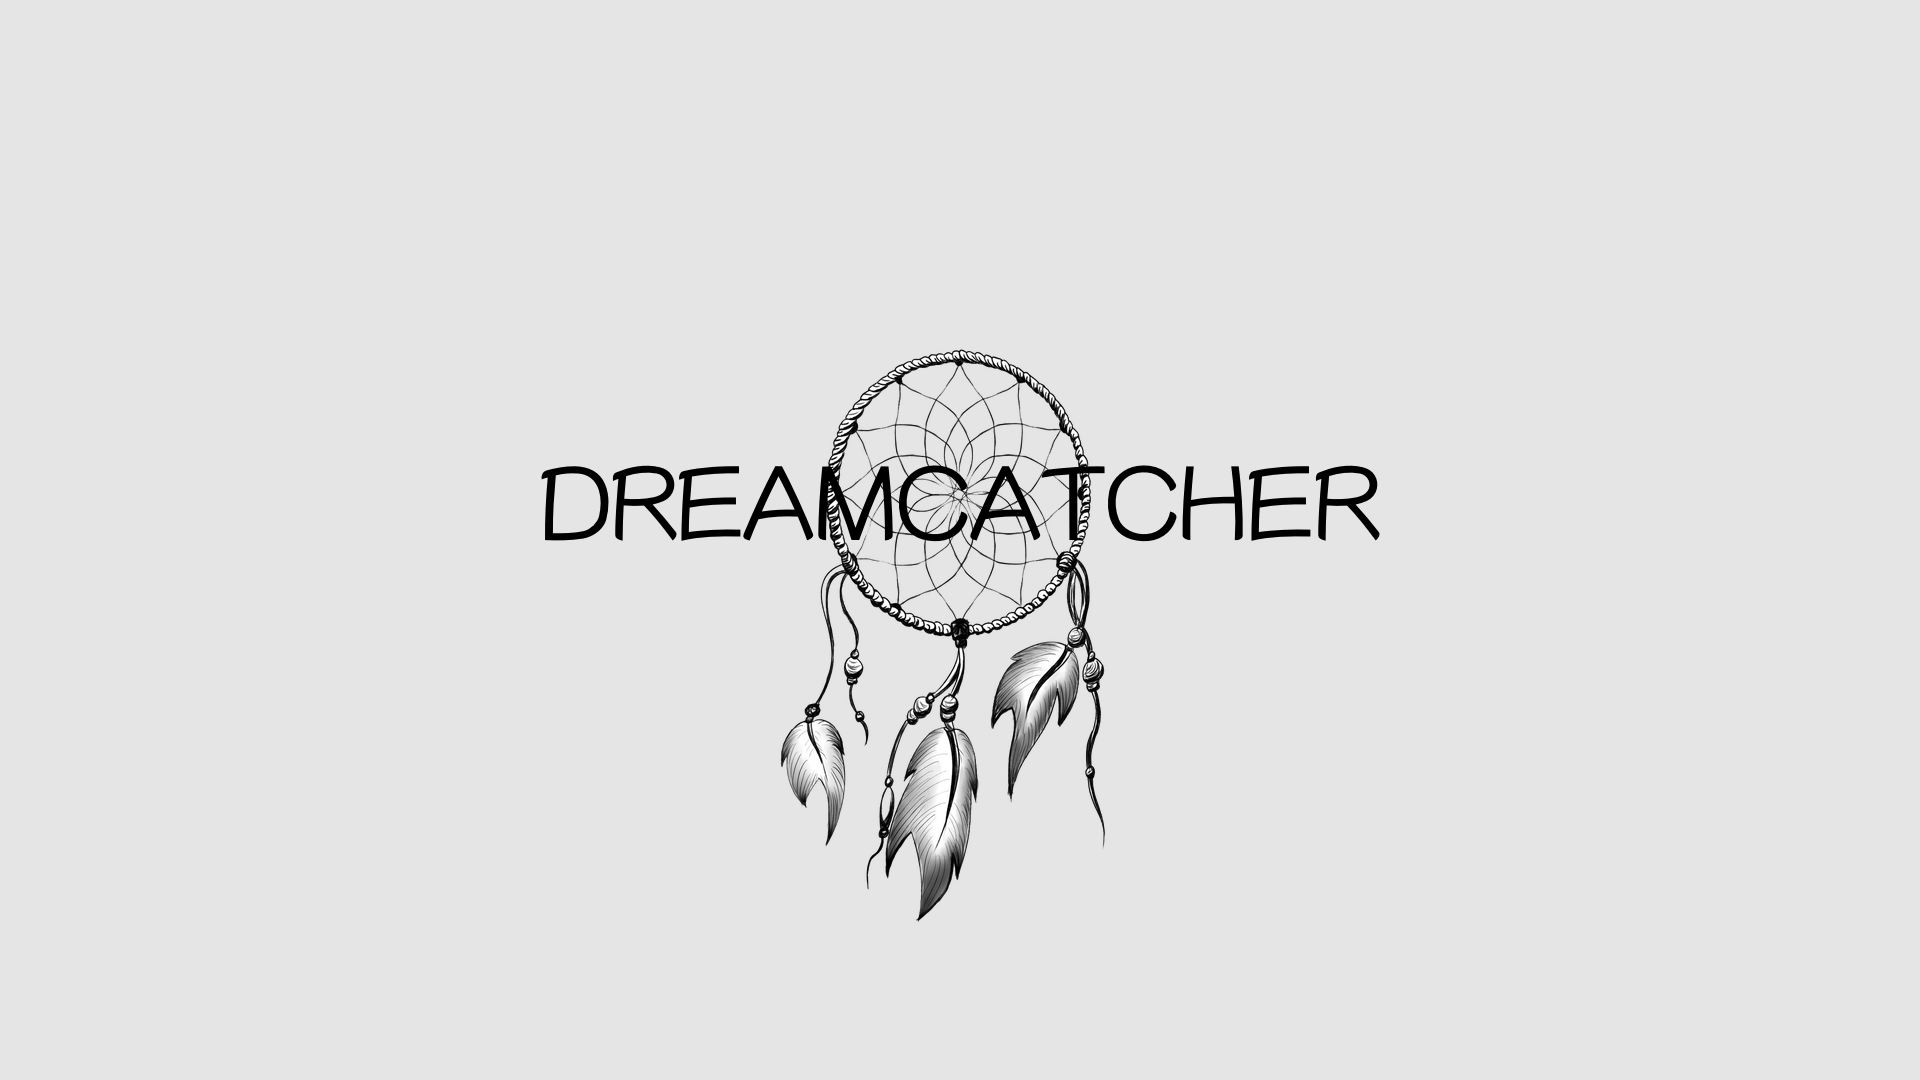 Rylan Mahoney Releases NEW “Dreamcatcher” Music Video